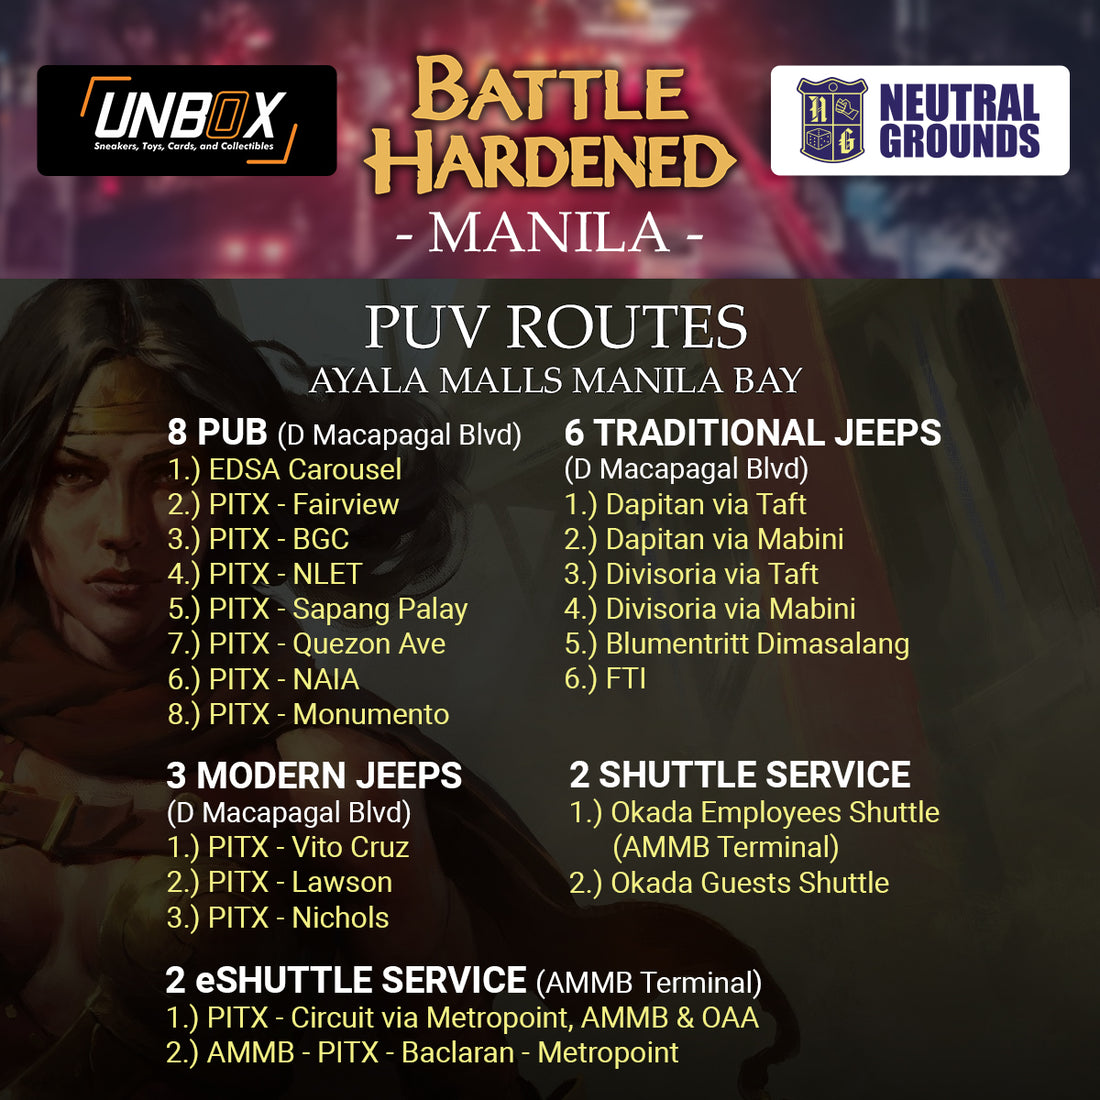 PUV Routes to Ayala Malls Manila Bay